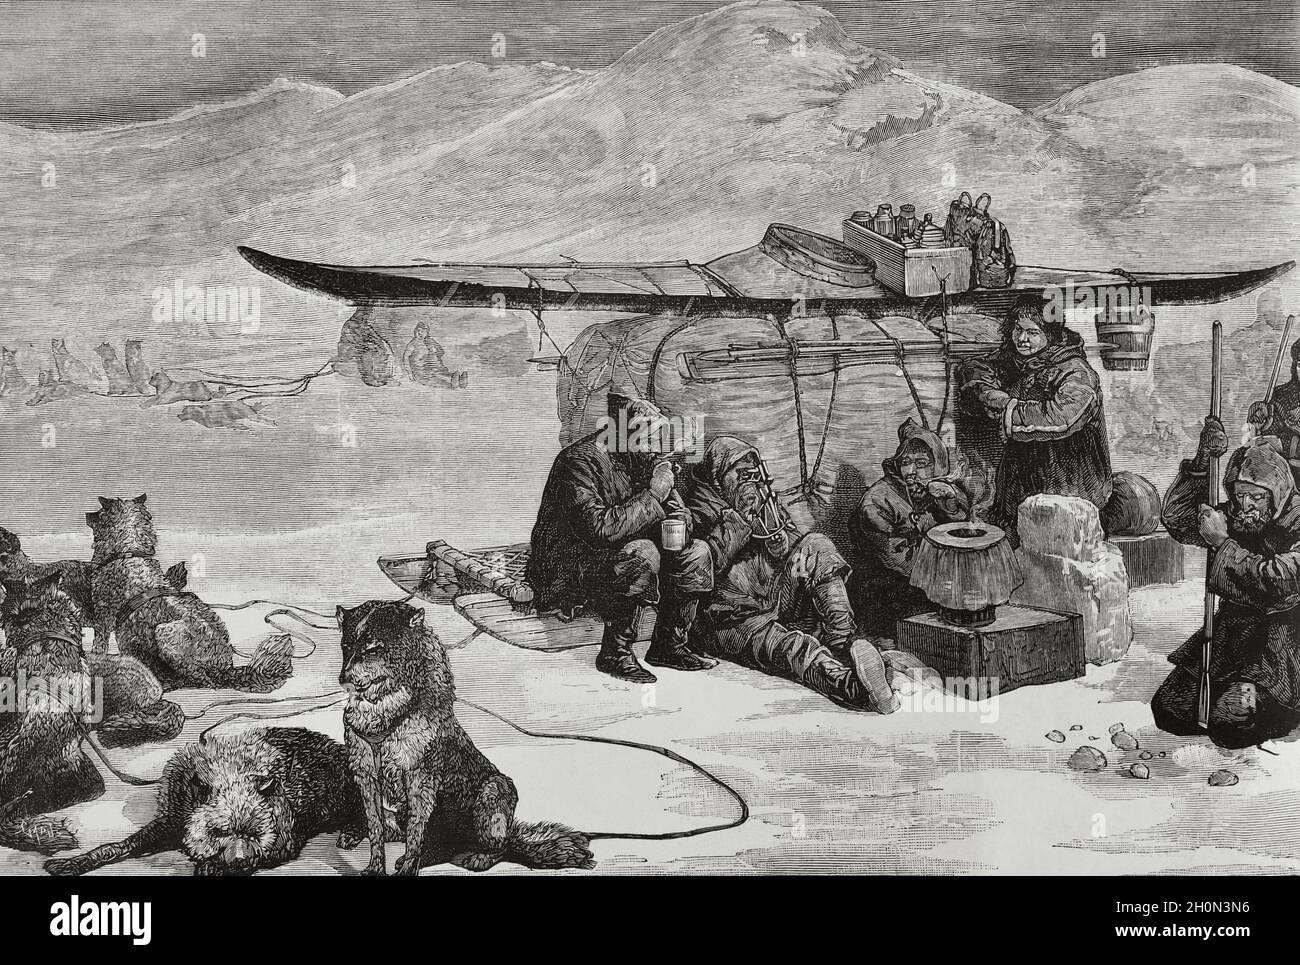 L'expédition perdue du capitaine sir John Franklin dans l'Arctique canadien, qui a quitté l'Angleterre en 1845, s'est terminée tragiquement avec la mort de tous les 129 cre Banque D'Images